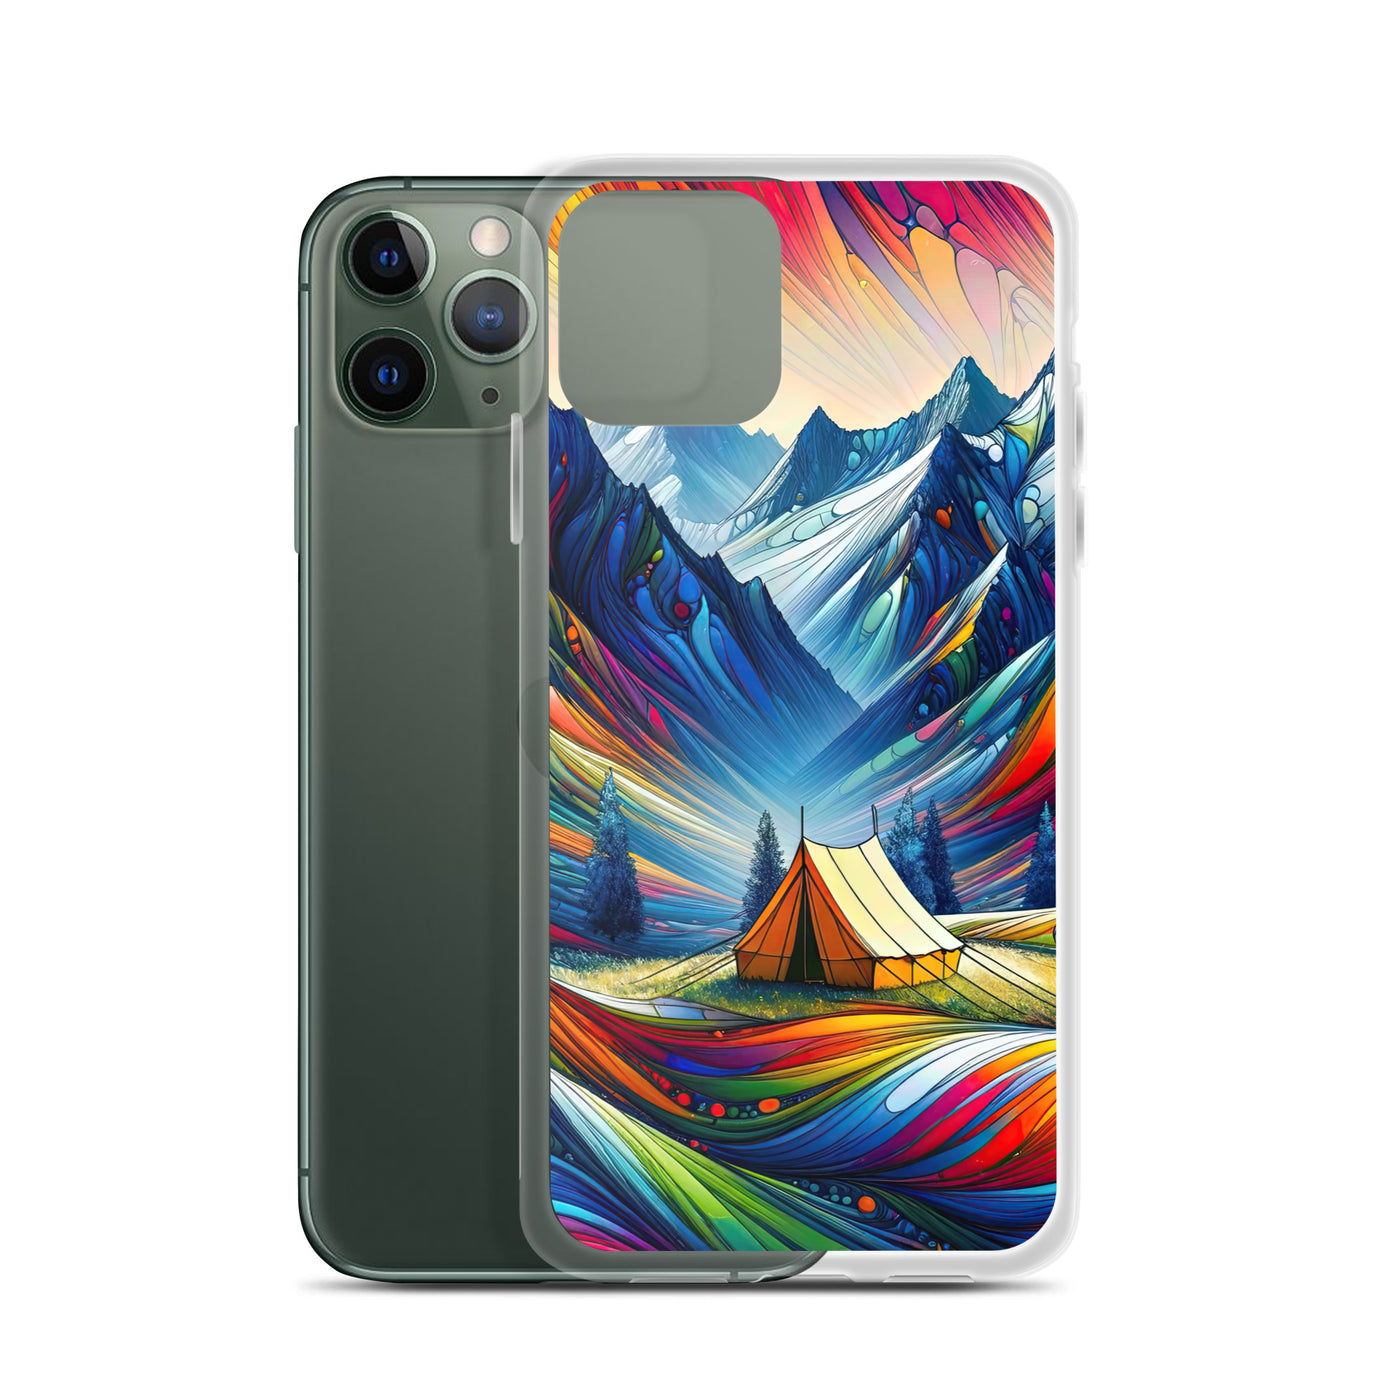 Surreale Alpen in abstrakten Farben, dynamische Formen der Landschaft - iPhone Schutzhülle (durchsichtig) camping xxx yyy zzz